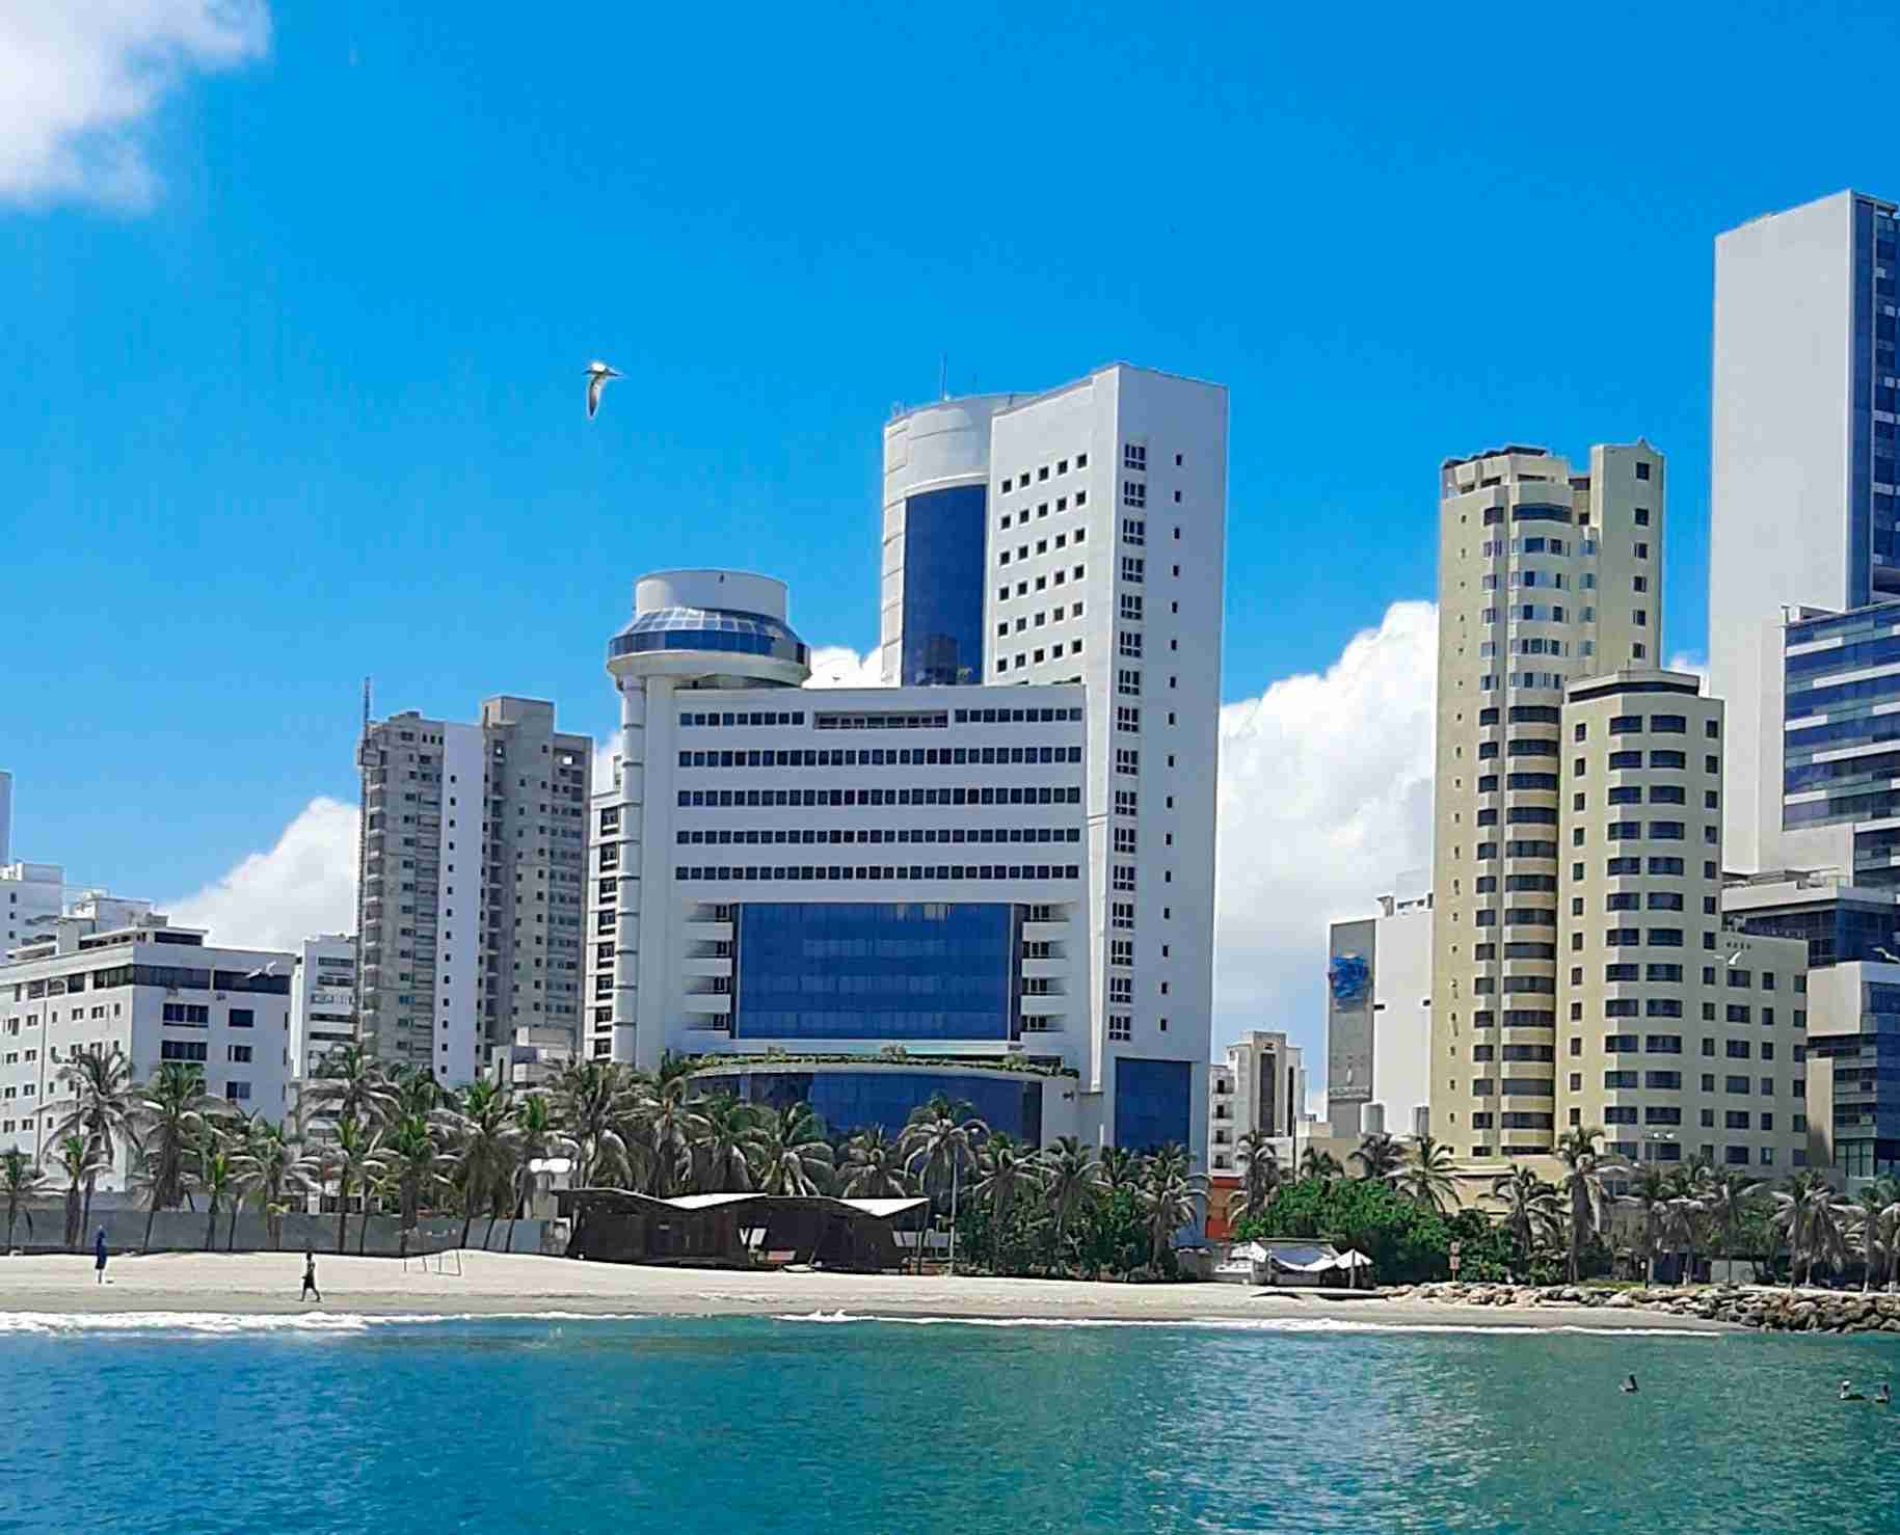 Hotel Almirante Cartagena le apuesta al turismo cultural y comunitario